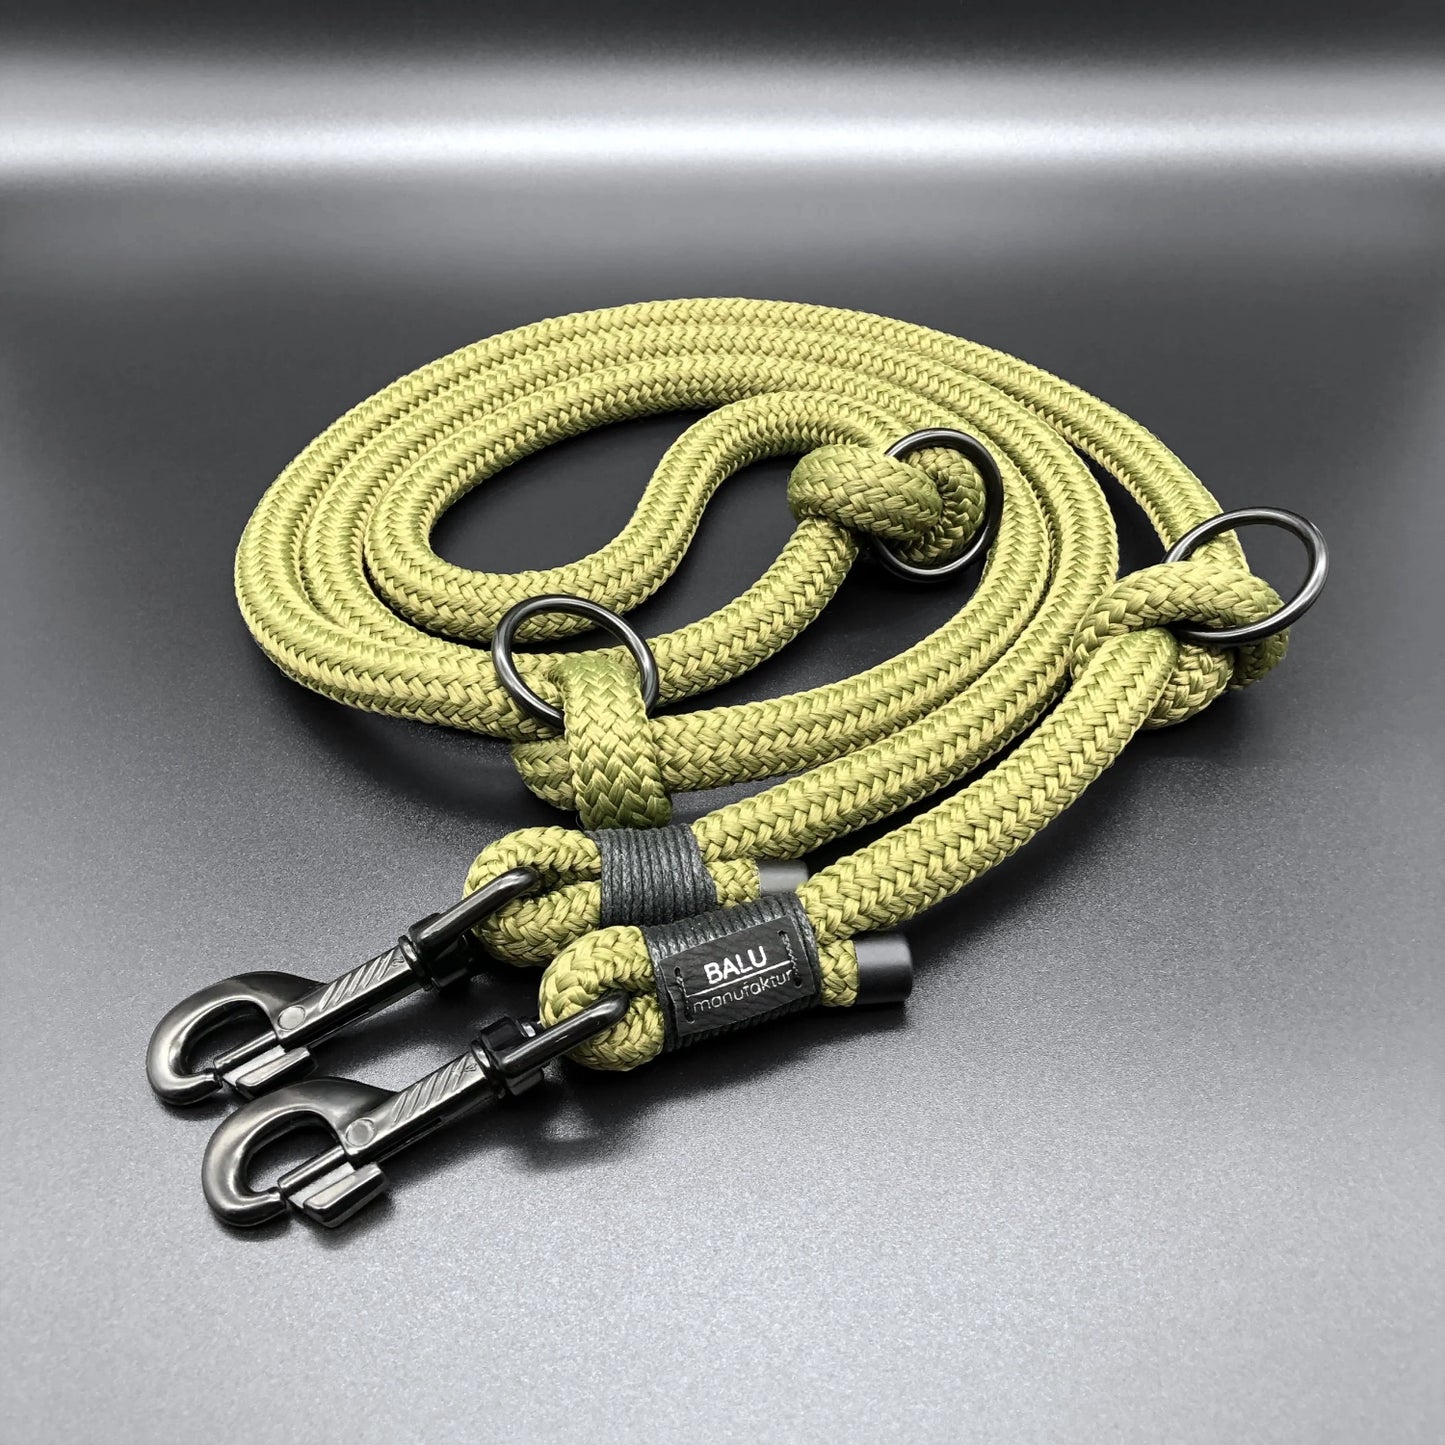 Verstellbare Hundeleine aus Seil in olivgrün in 2m Länge und schwarzen Metallelementen